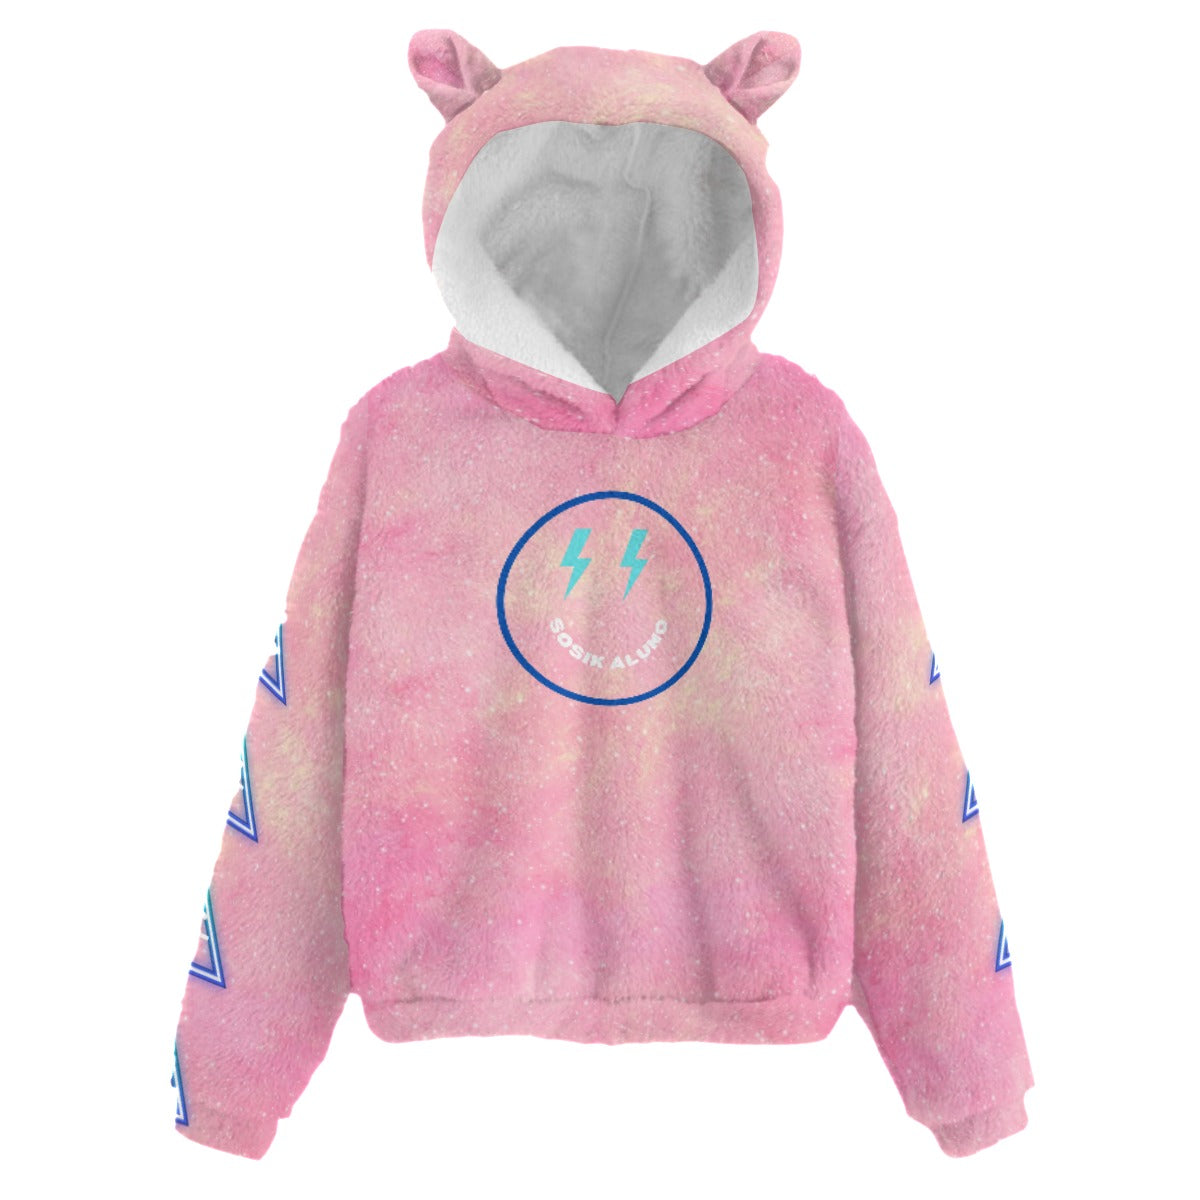 Kid’s Fleece Sweatshirt With Ears